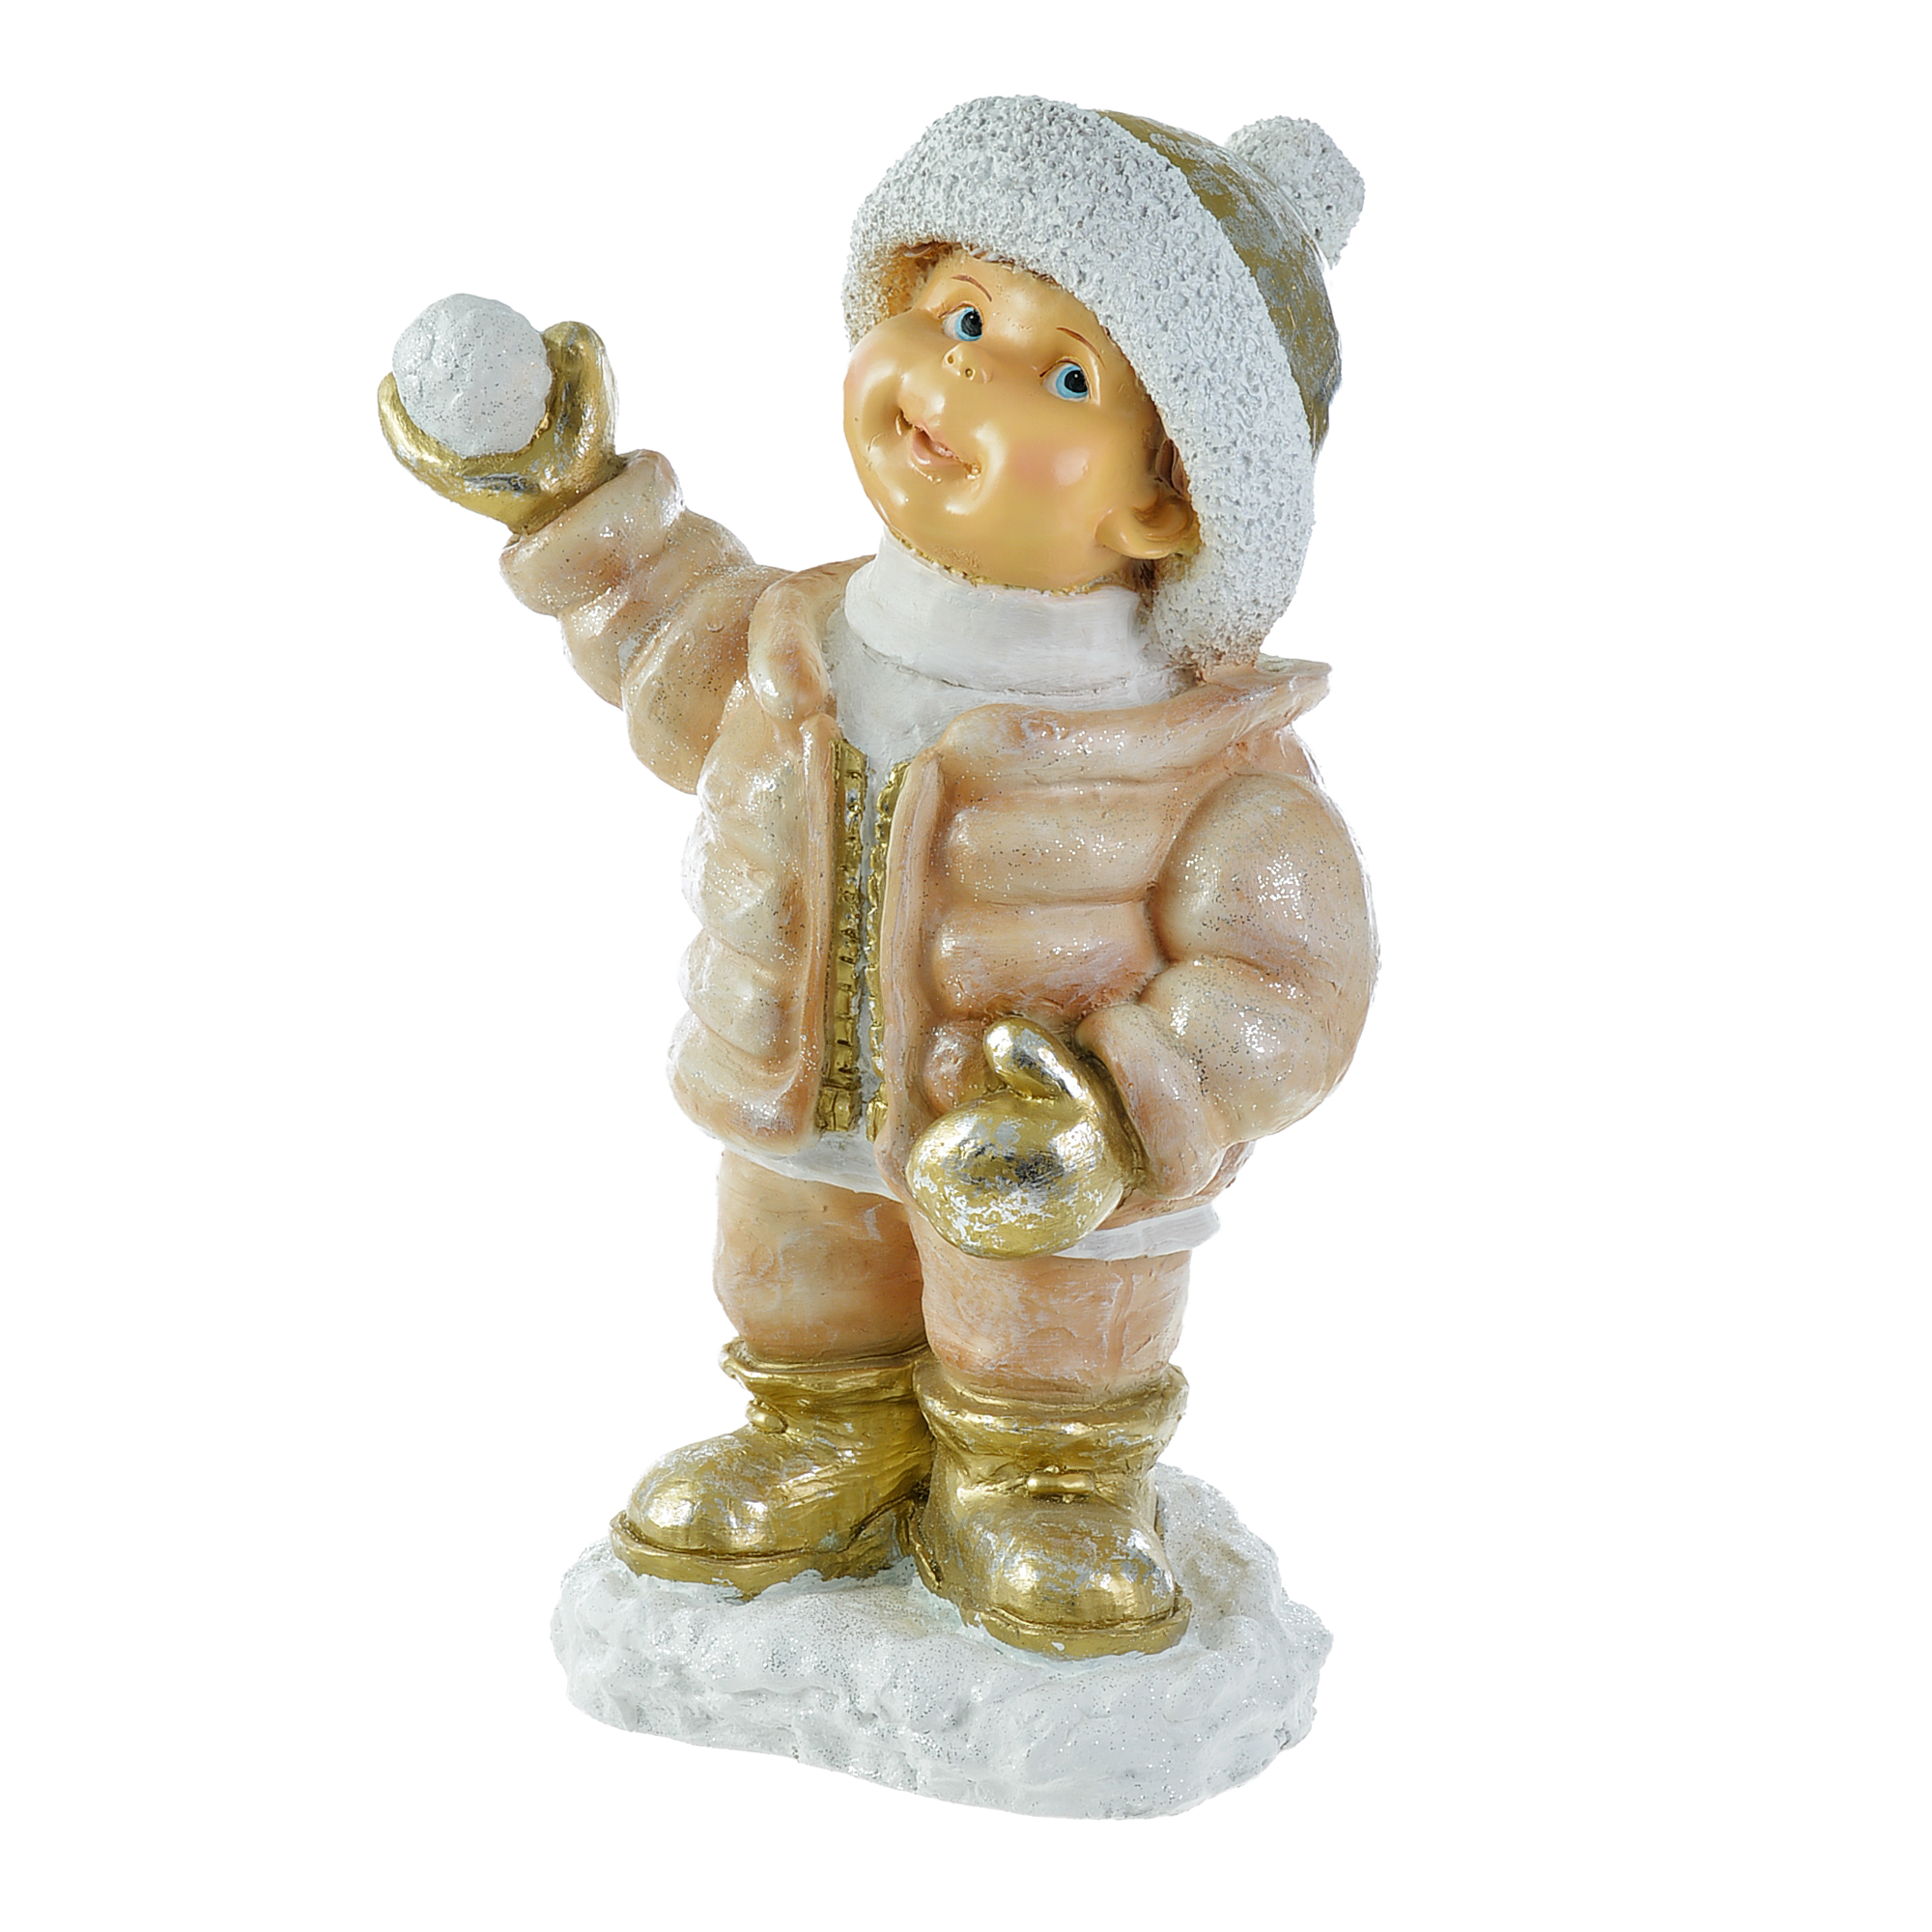 Мальчик в шапке играет в снежки н-65см Тпк полиформ скворечник новогодний тпк полиформ 45 см